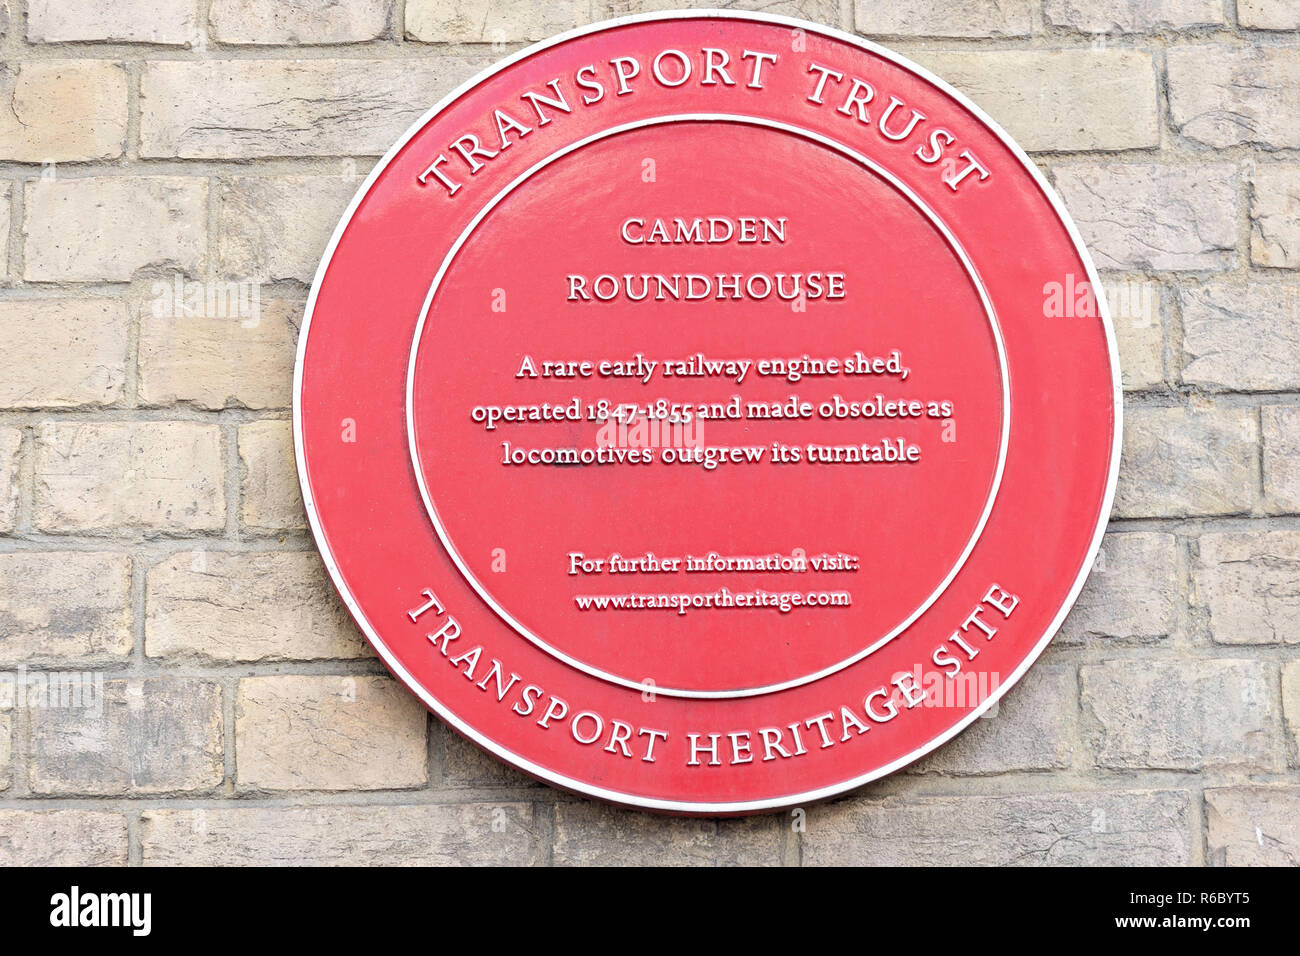 Patrimoine Transport plaque sur le Roundhouse, Chalk Farm Road, Camden Town, London Borough of Camden, Greater London, Angleterre, Royaume-Uni Banque D'Images